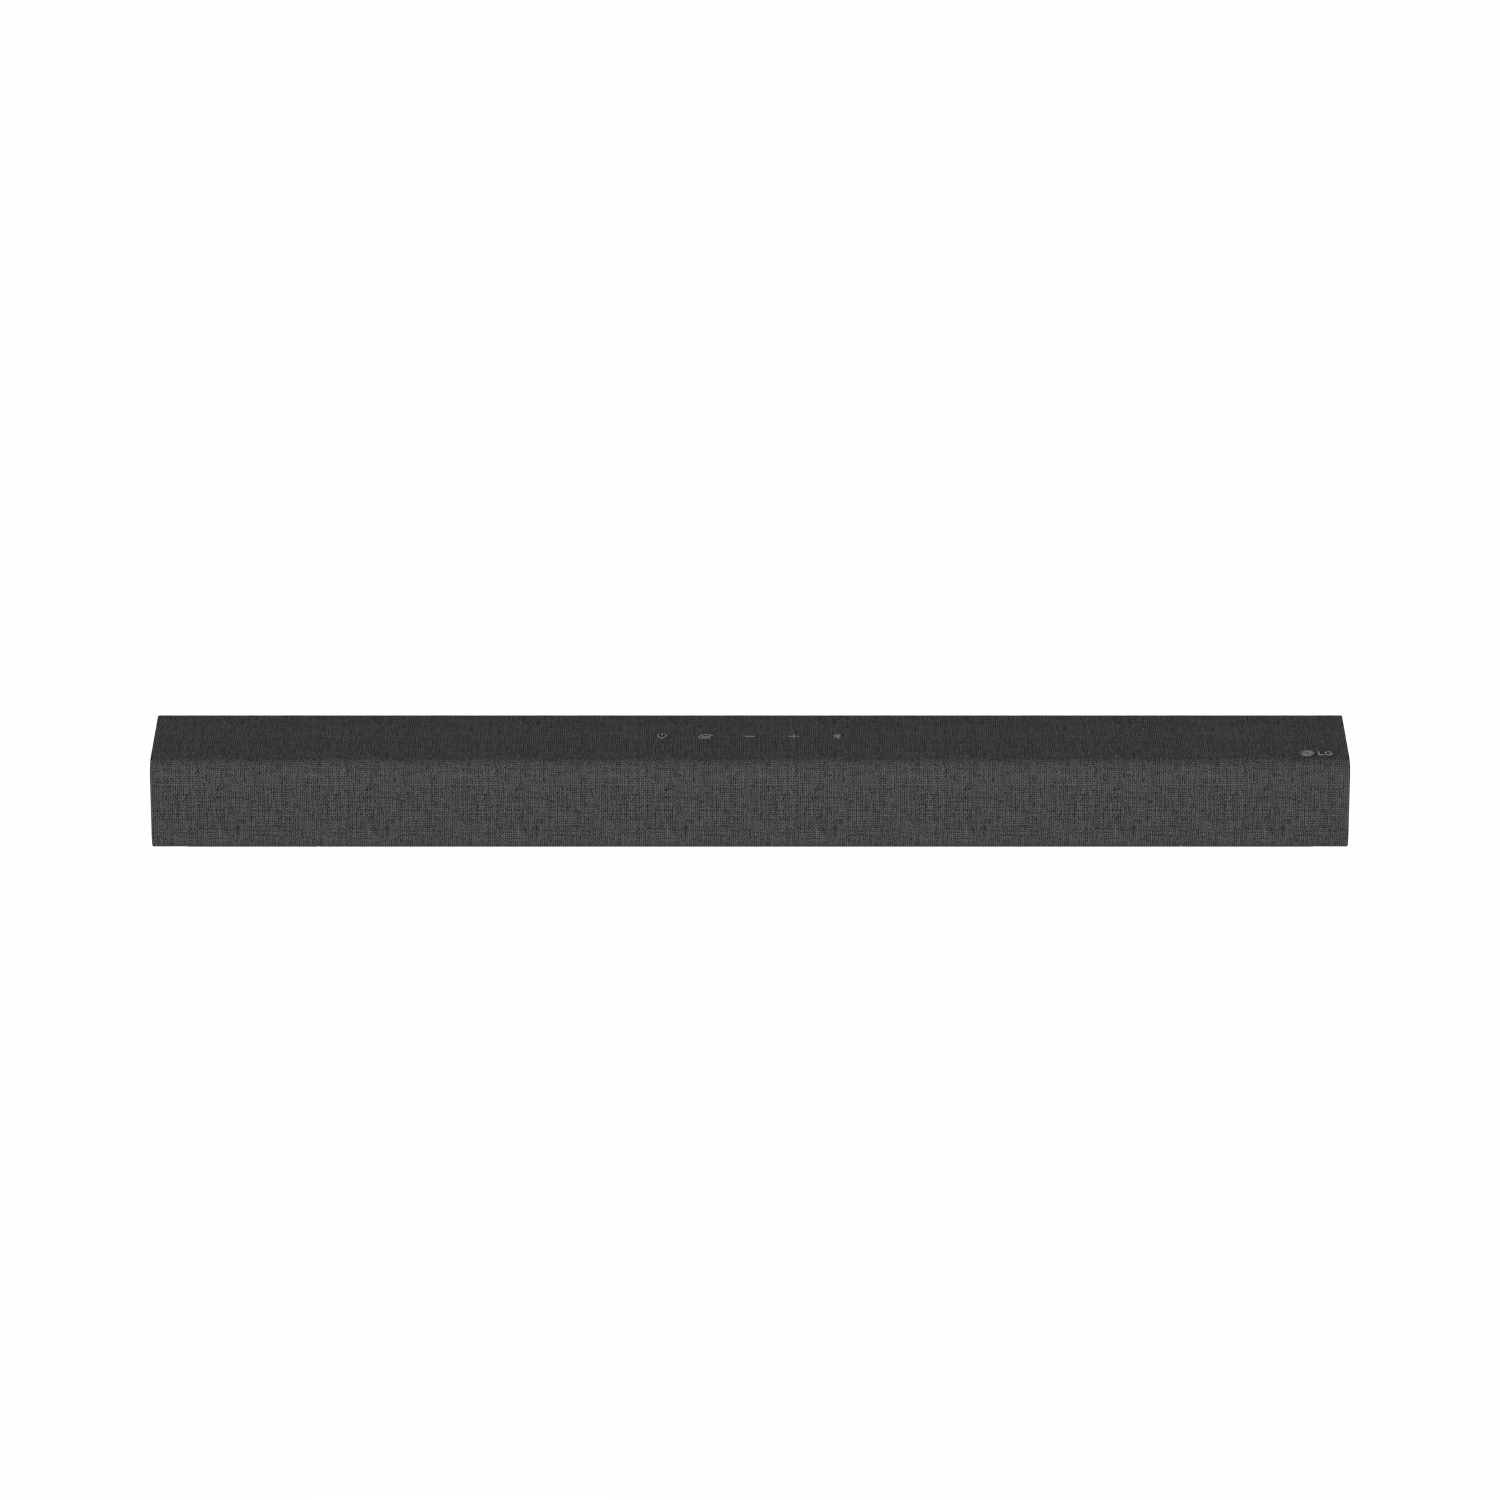 LG SP2_CGBRLLK Soundbar All in One 2.1 Ch 100W Dark Grey - 4